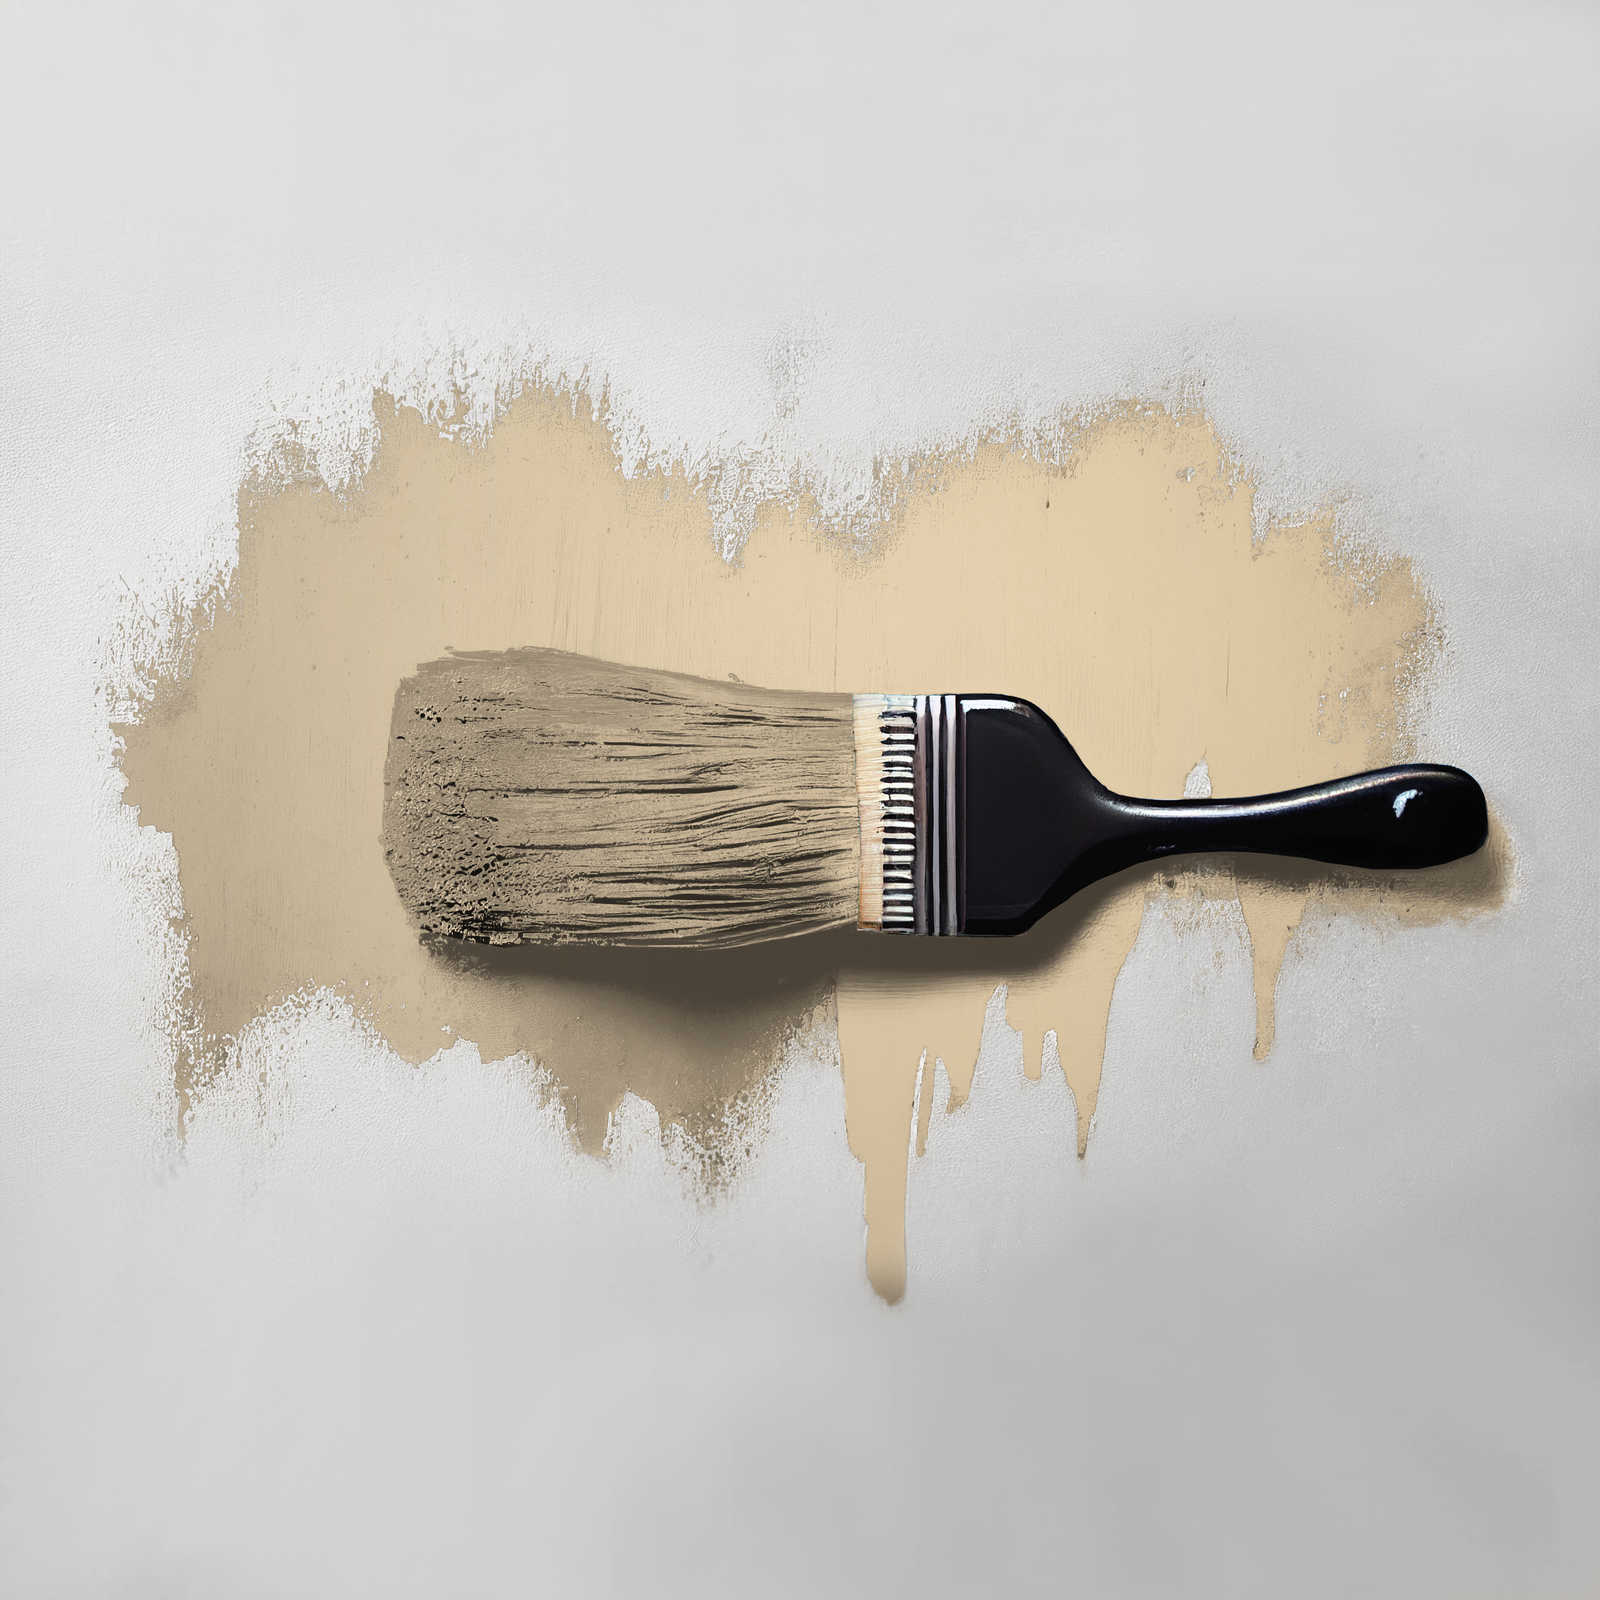             Wall Paint TCK6003 »Asthetic Artichoke« in homely beige – 2.5 litre
        